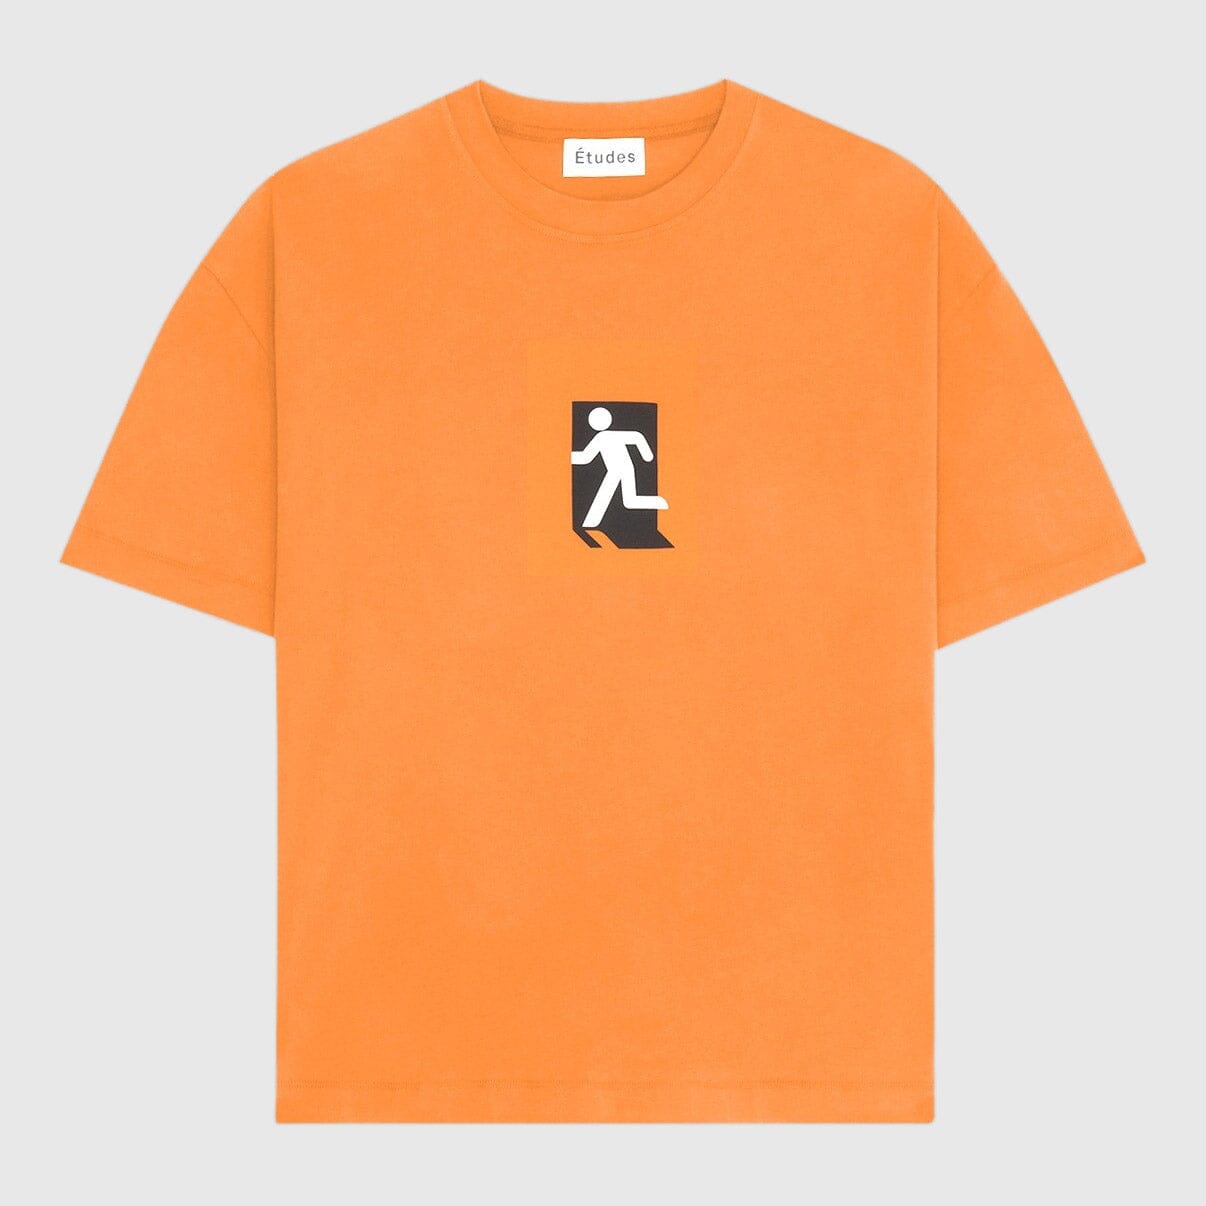 Études Spirit Out T-shirt - Orange T-Shirt Études 